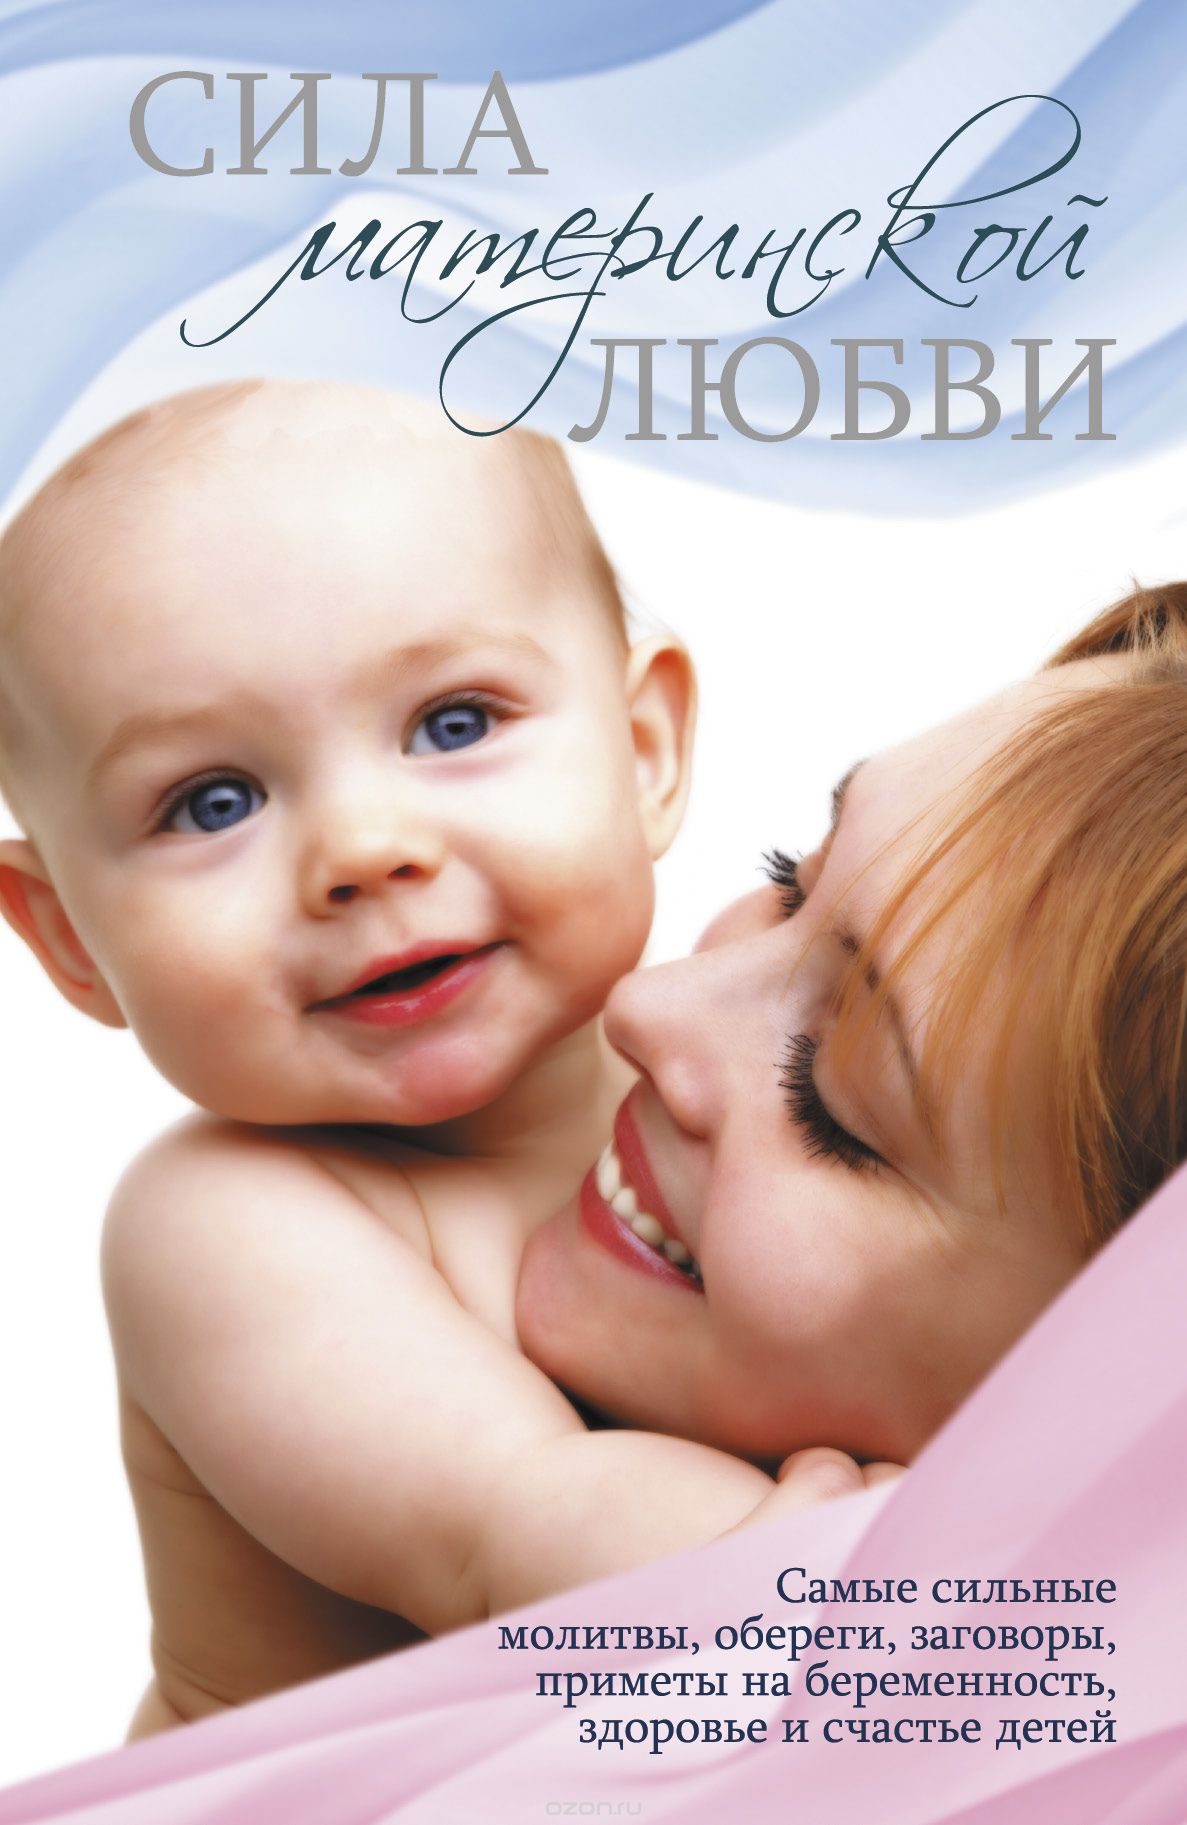 Скачать книгу "Сила материнской любви, Л.С. Конева"